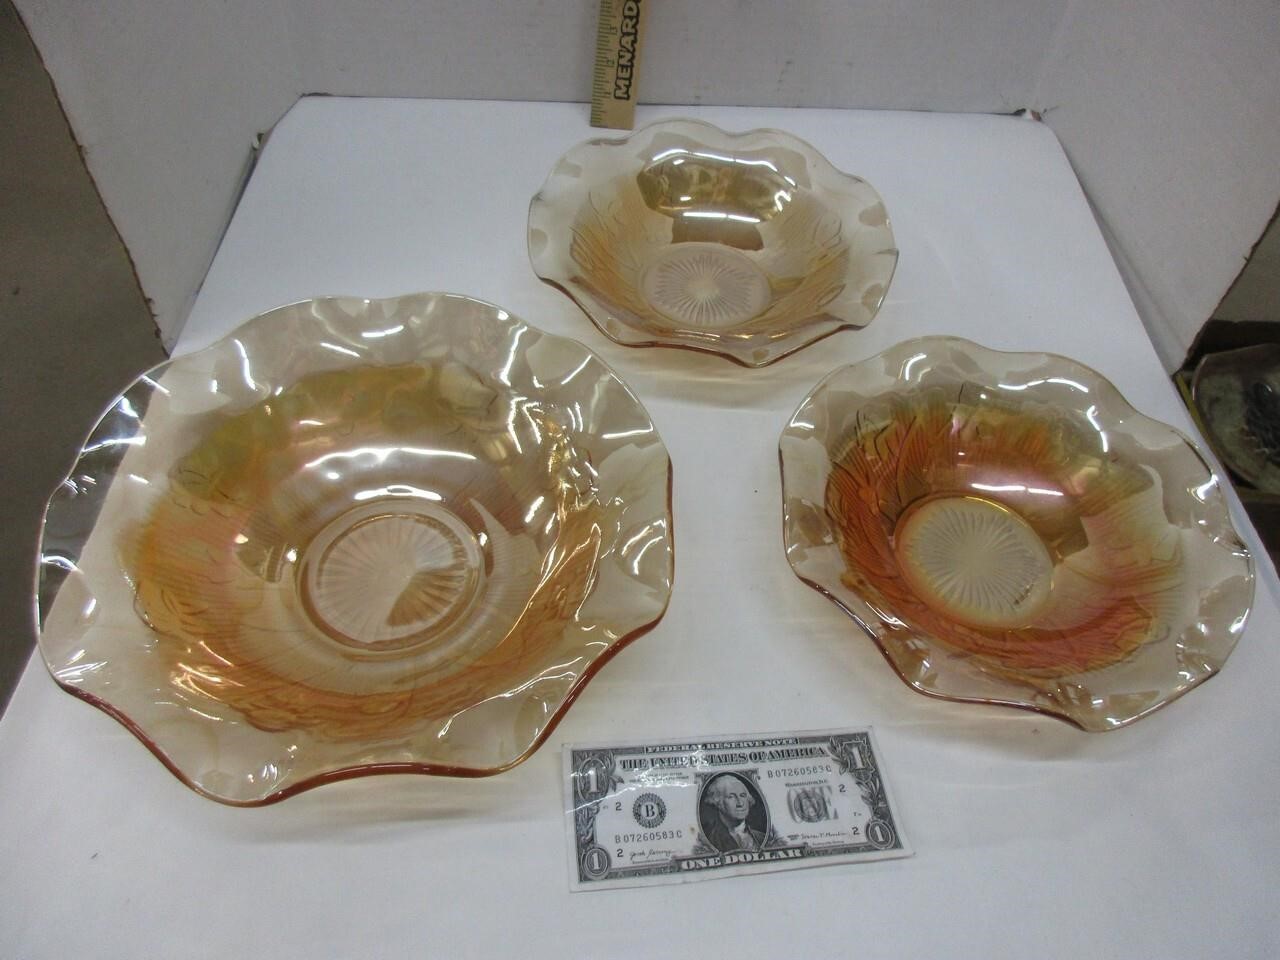 Vintage Carnival glass bowls